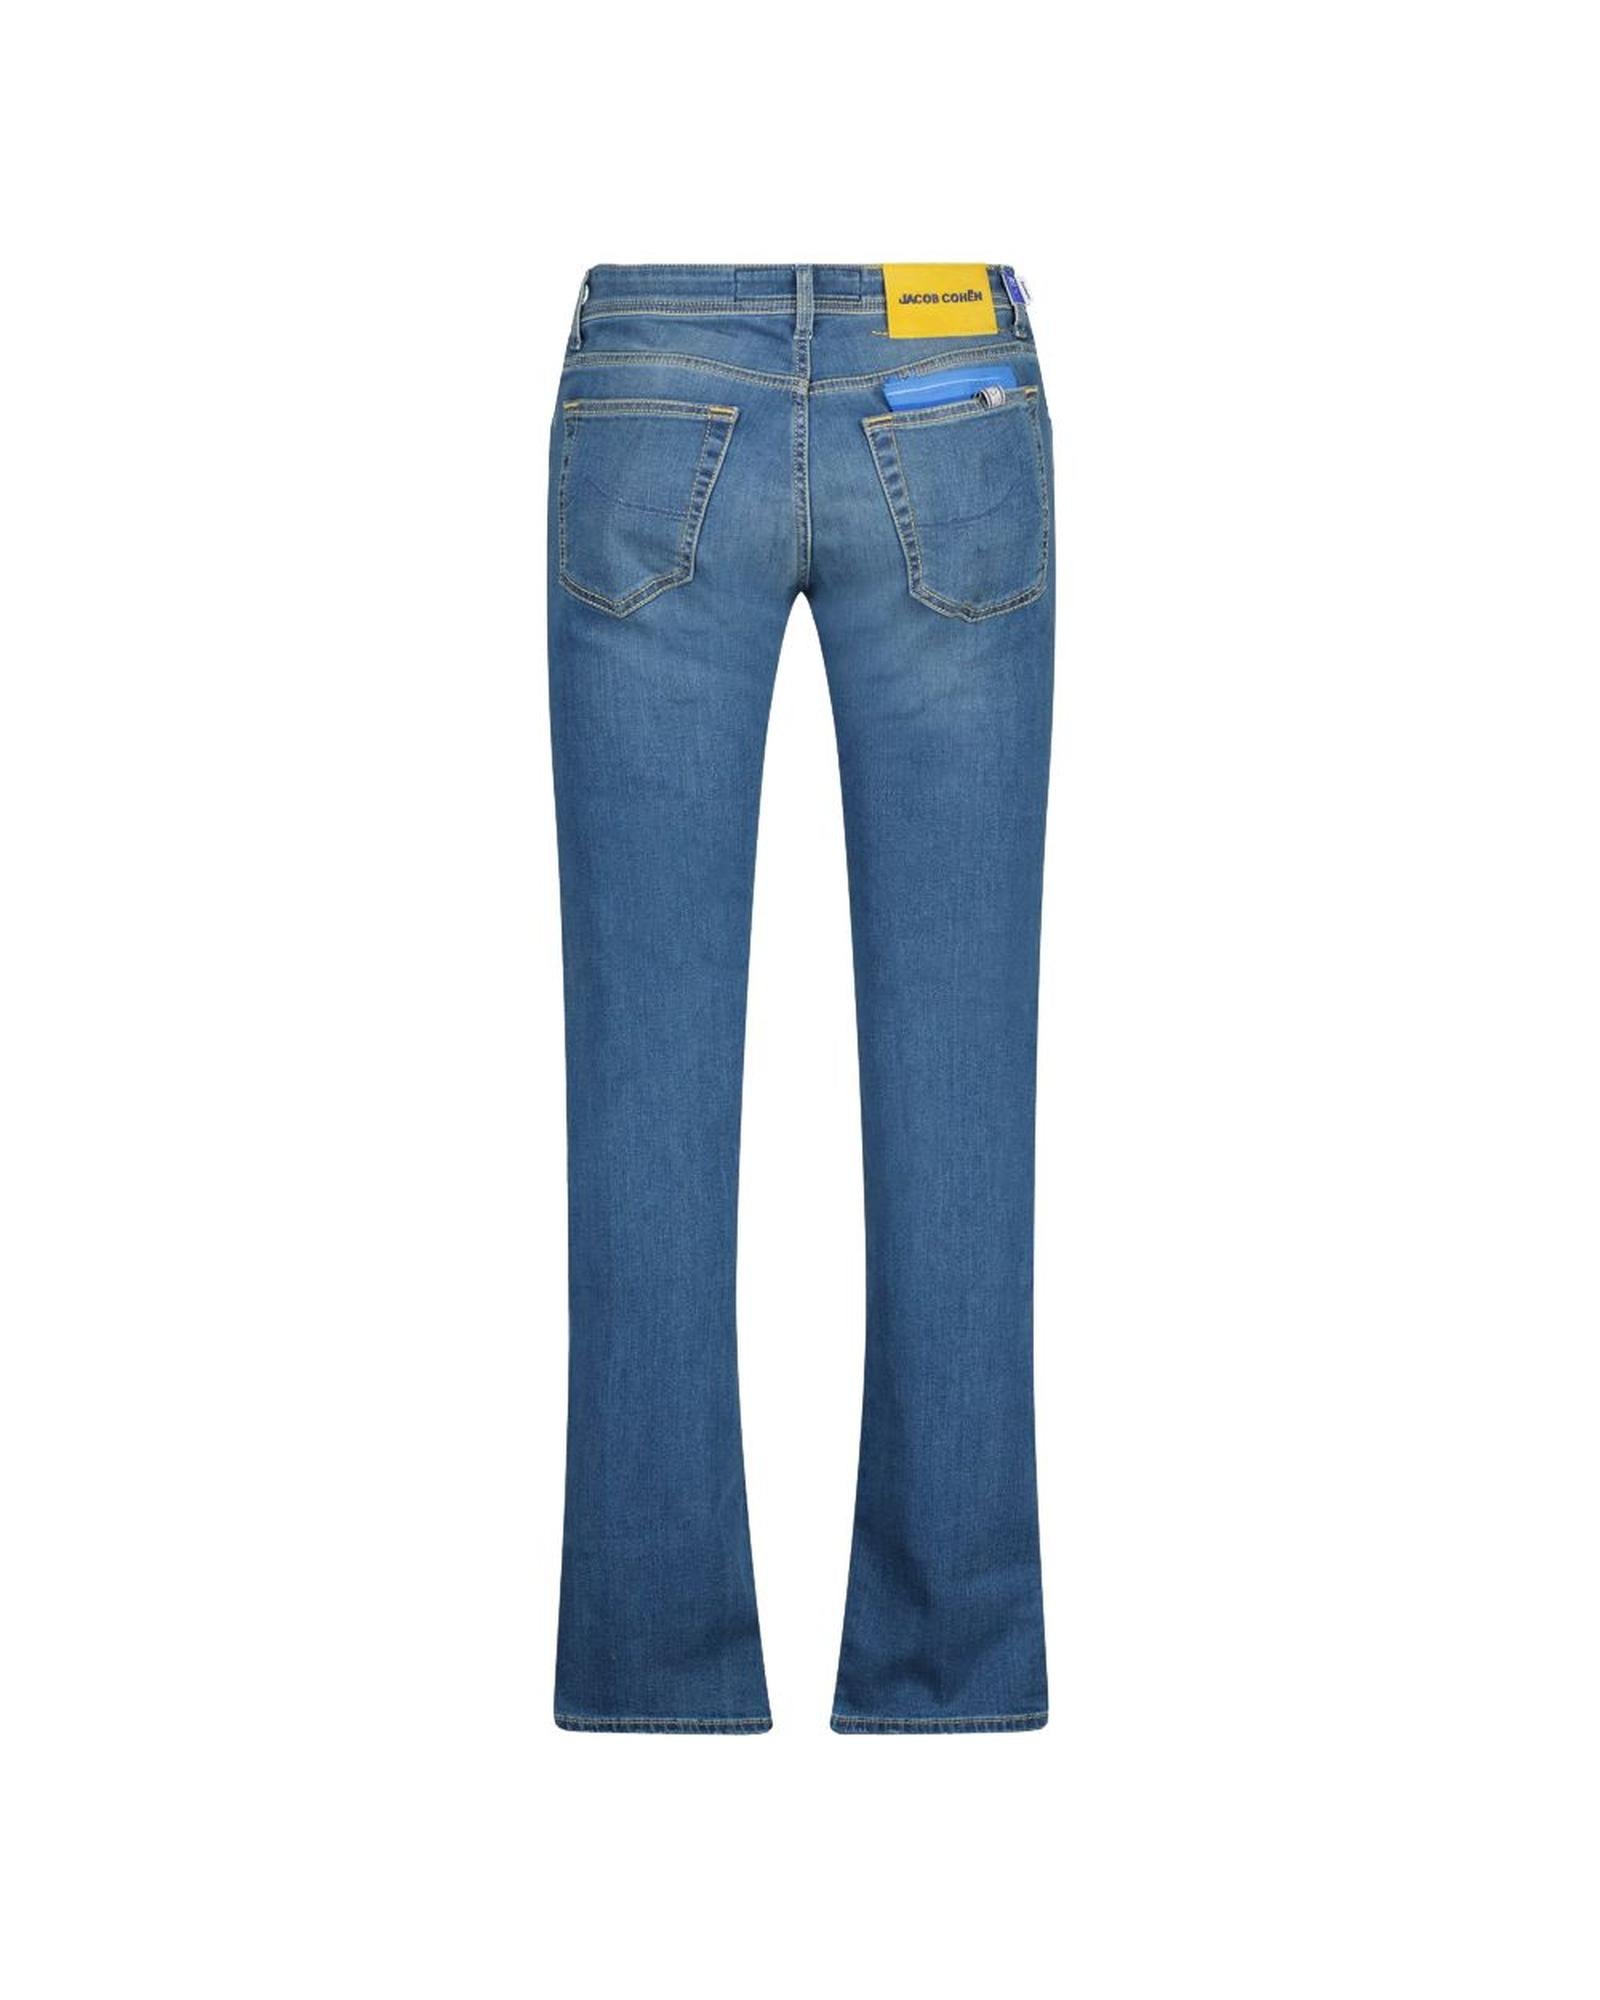 Men's Blue Cotton Jeans & Pant - W34 US